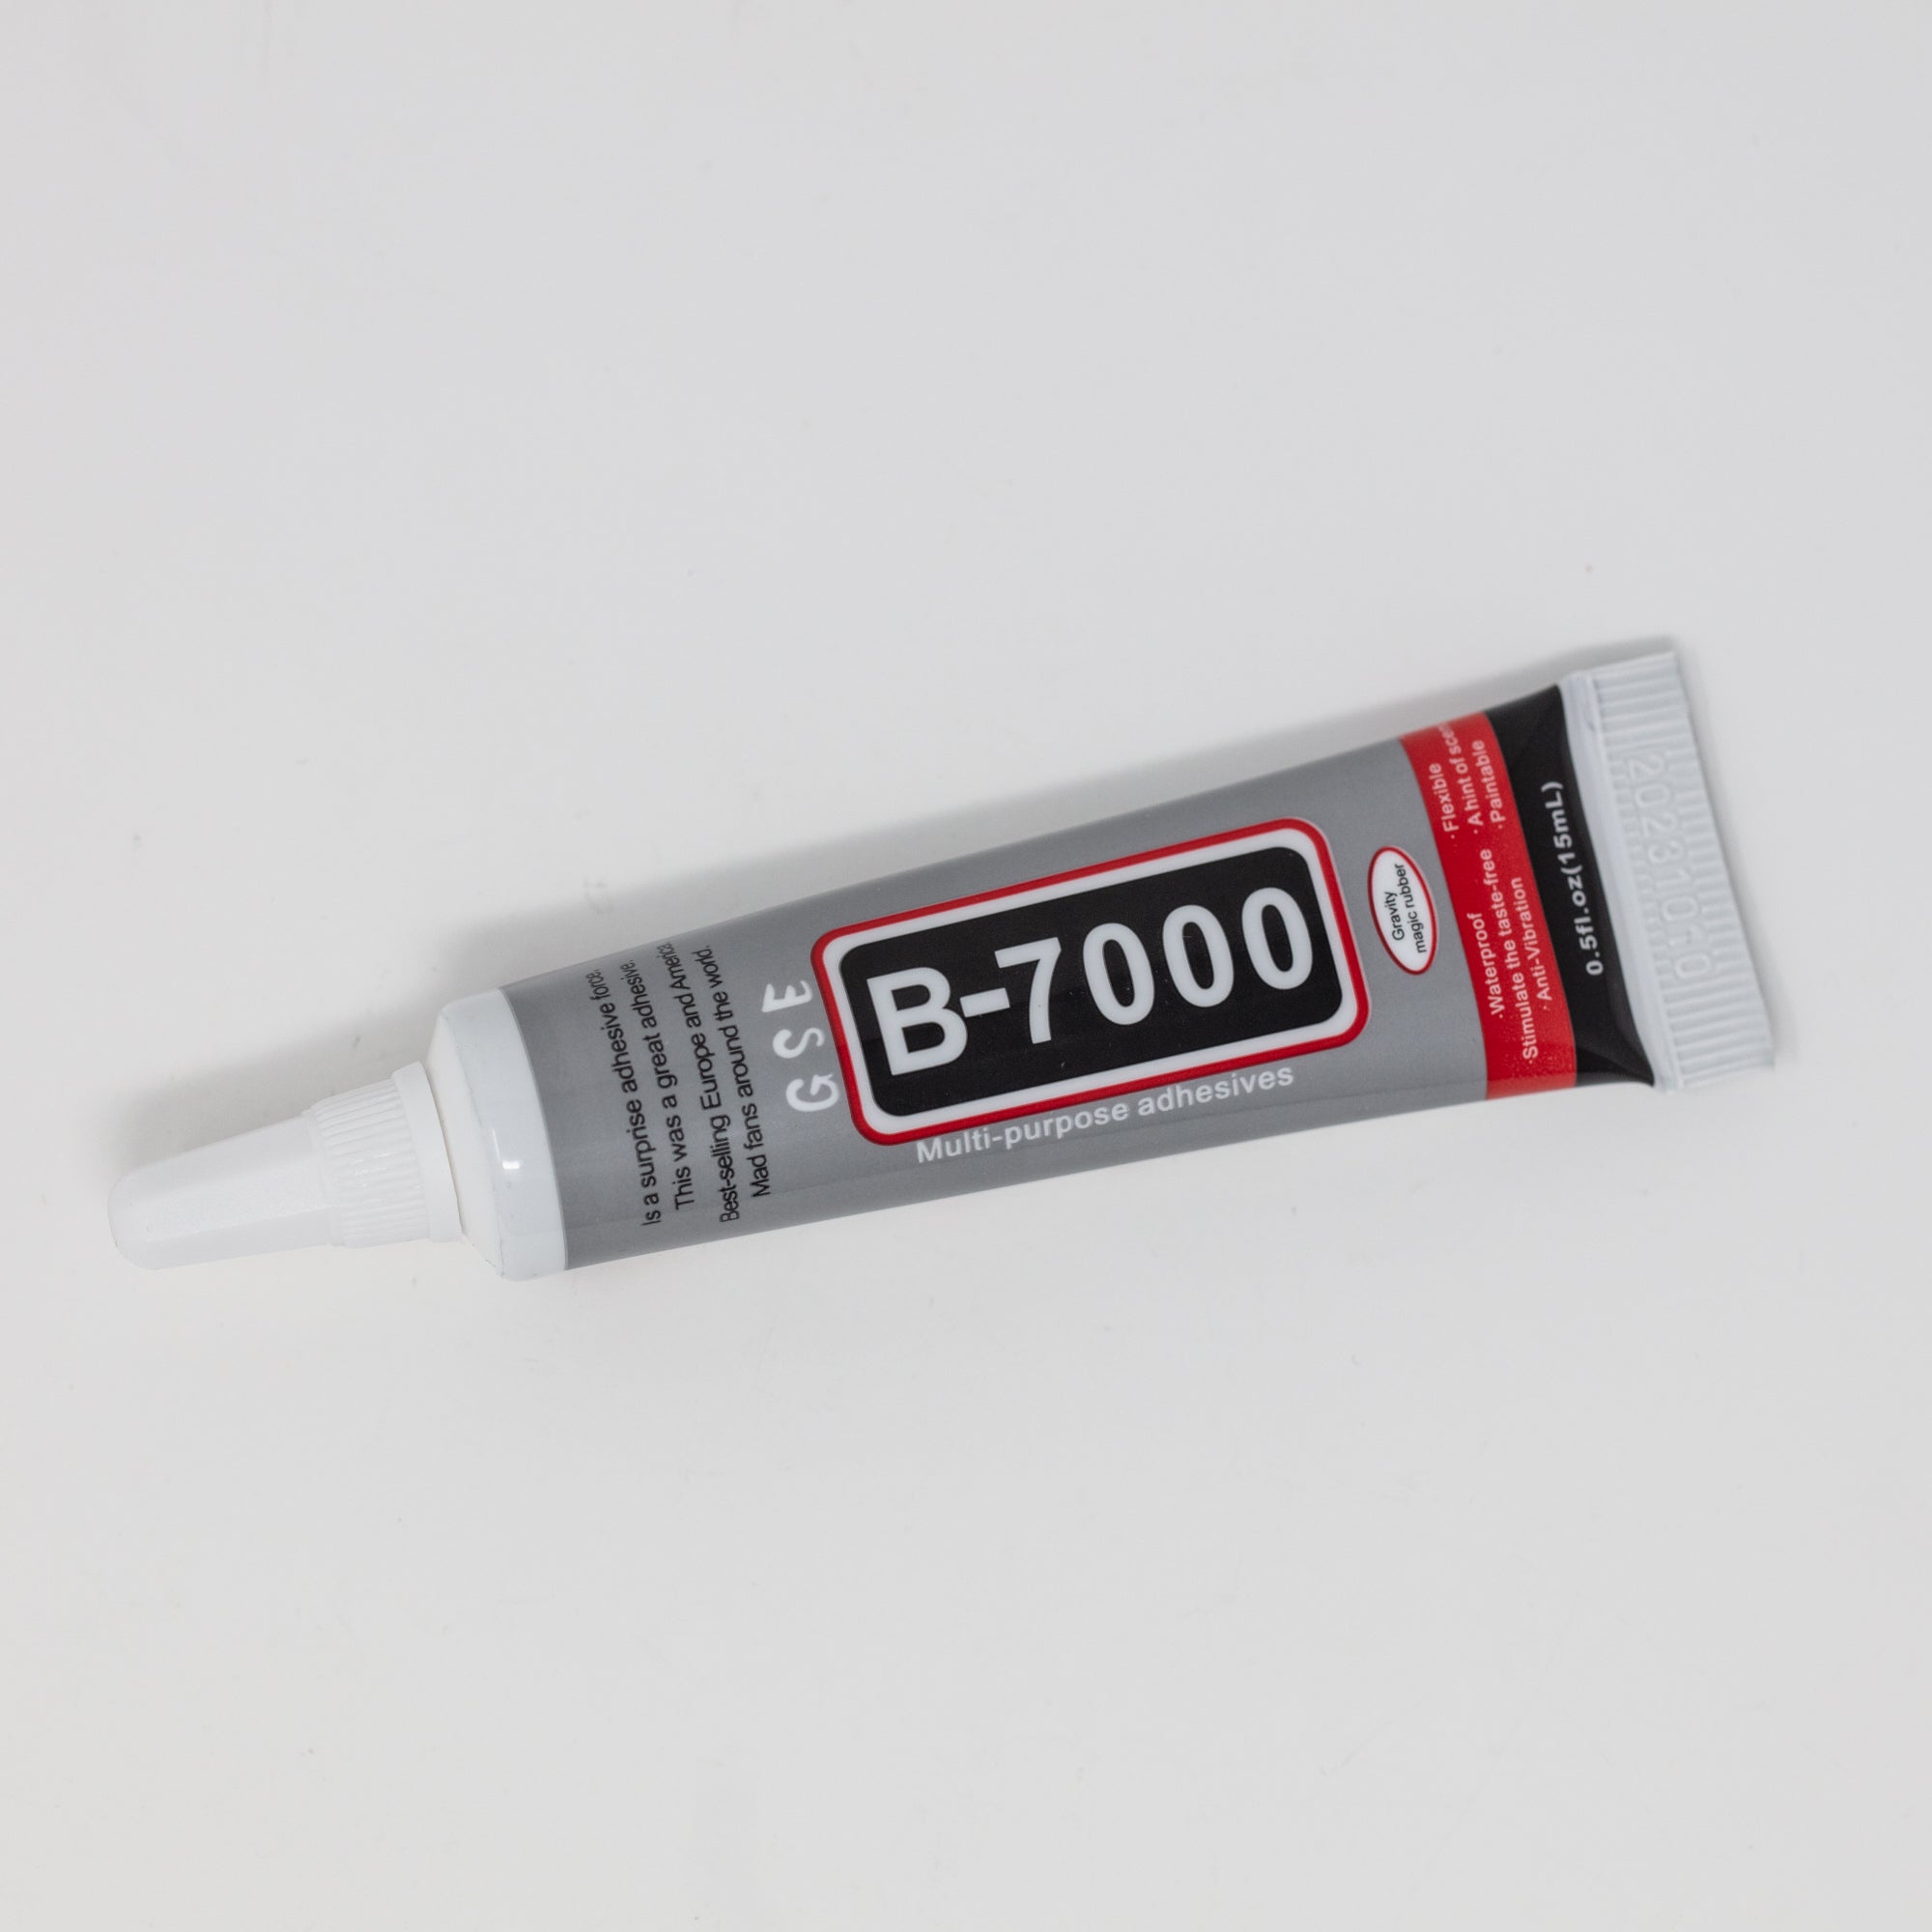 B7000 Glue